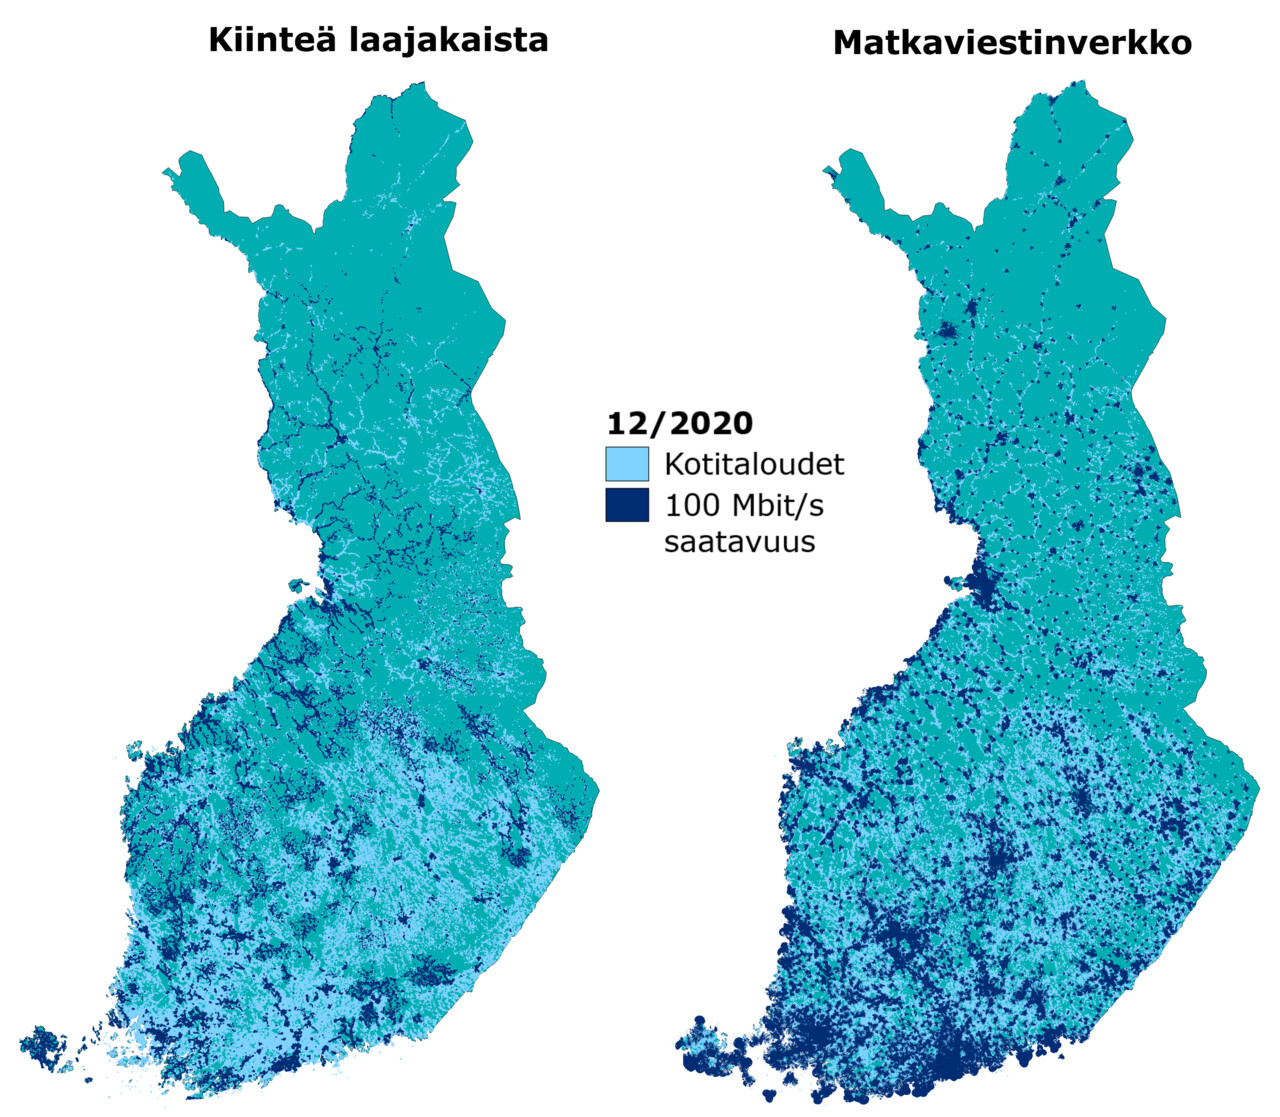 Nopean laajakaistan saatavuus kotitalouksille vuoden 2020 lopussa. Sekä nopean kiinteän laajakaistayhteyden että nopean matkaviestinverkon saatavuus keskittyy pääosin Etelä- ja Länsi-Suomen kaupunkialueille. Vaikka väestöpeitot ovat suhteellisen korkeita, jää maantieteellisesti suuri osa maata kattamatta.